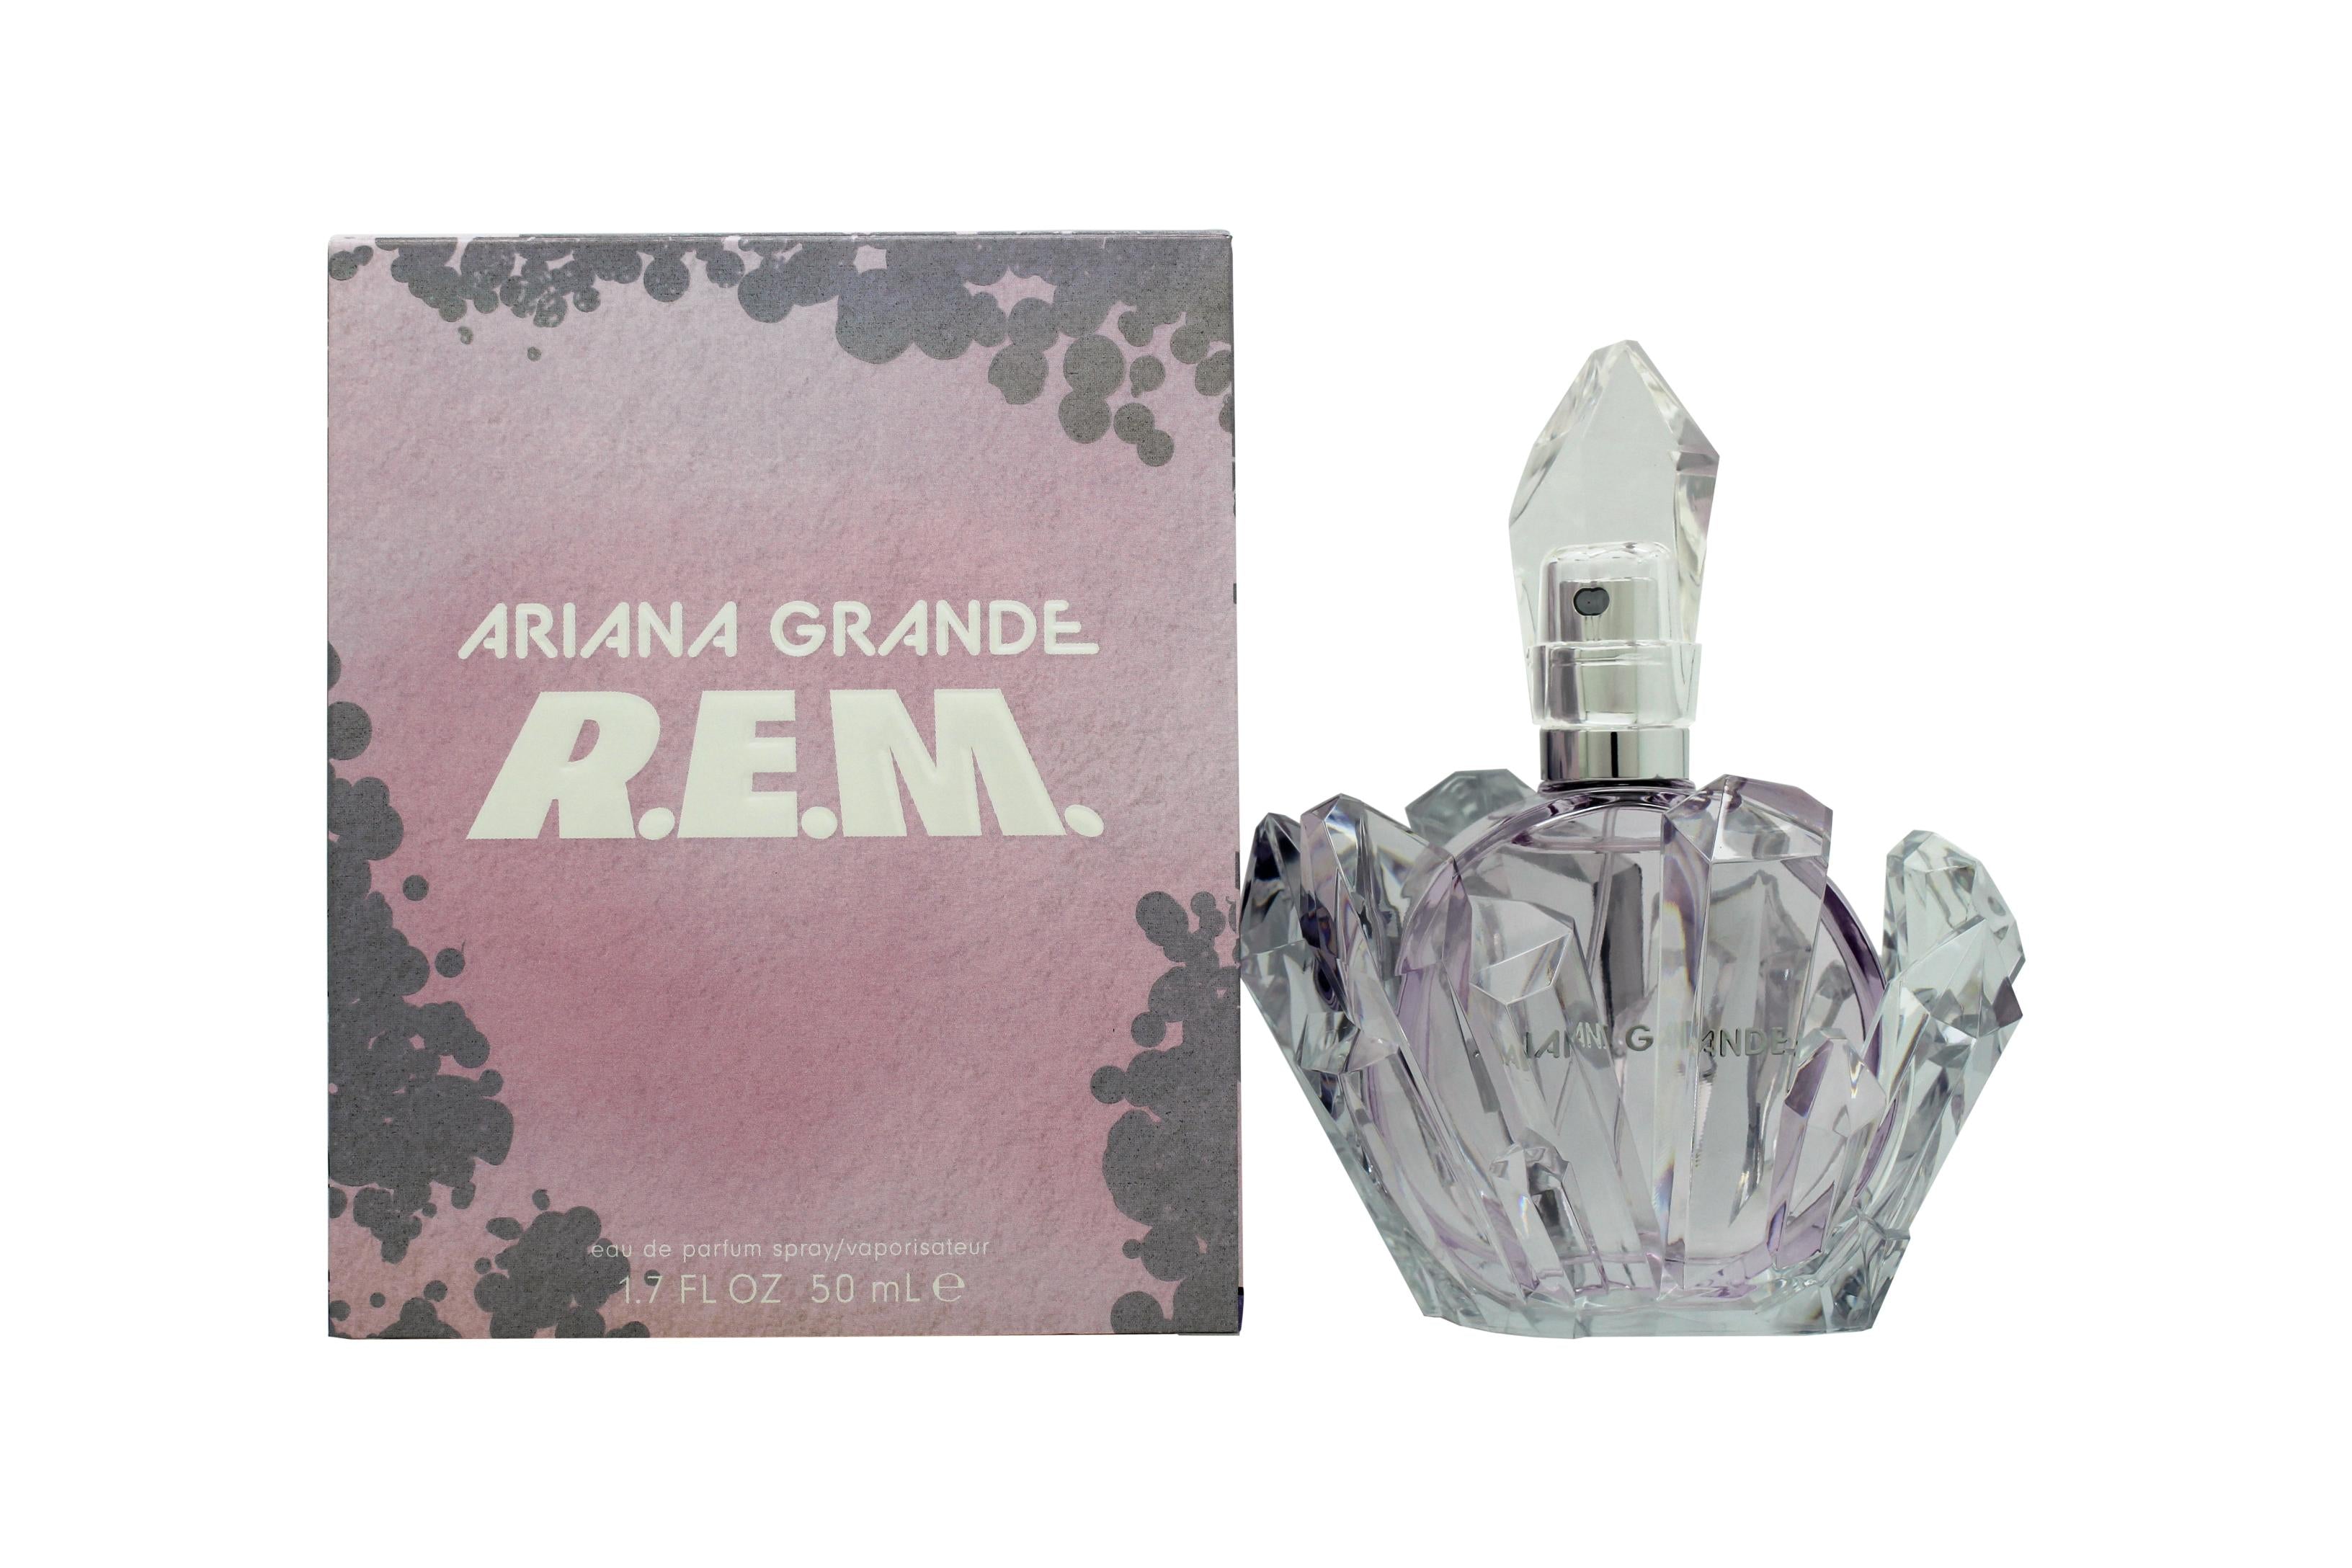 View Ariana Grande REM Eau de Parfum 50ml Spray information